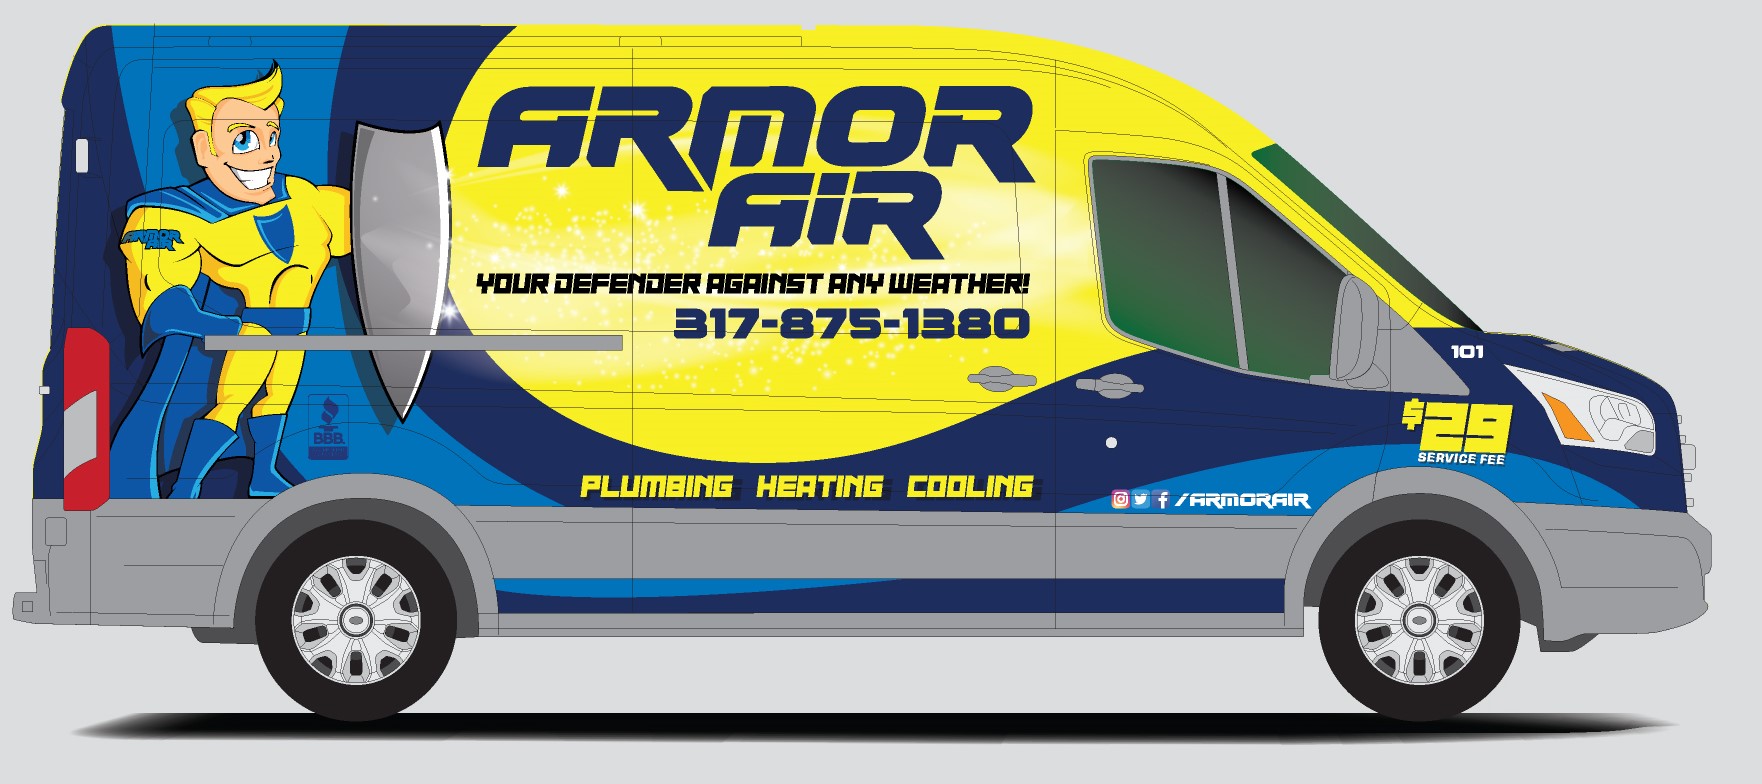 Armor Air Logo